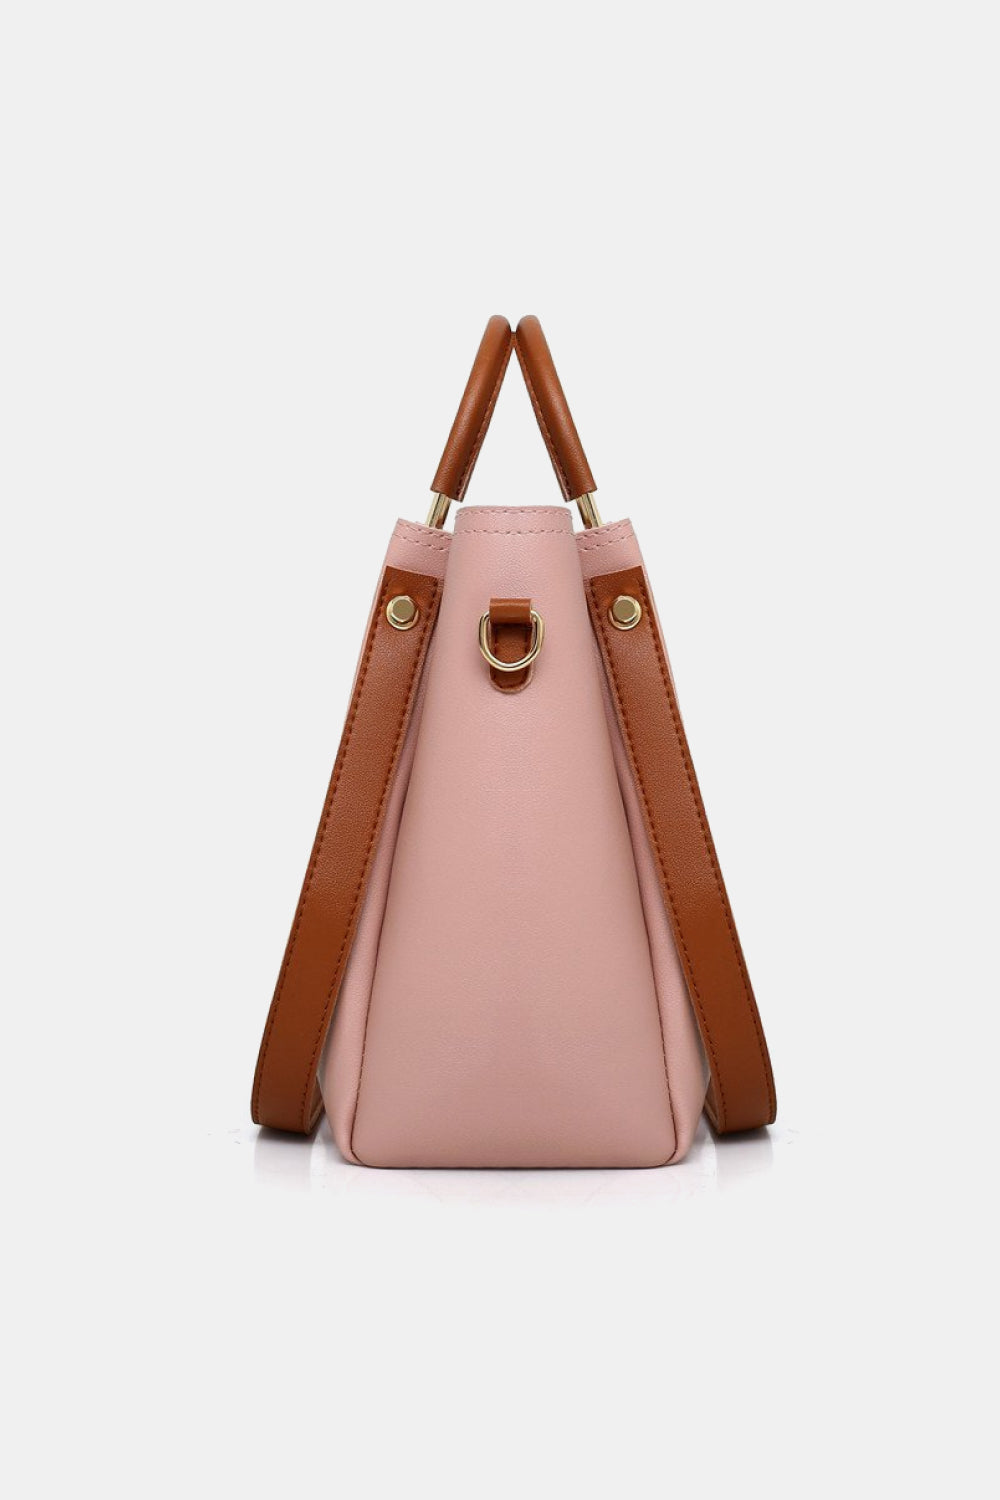 4-Piece PU Leather Bag Set (2 Colors)